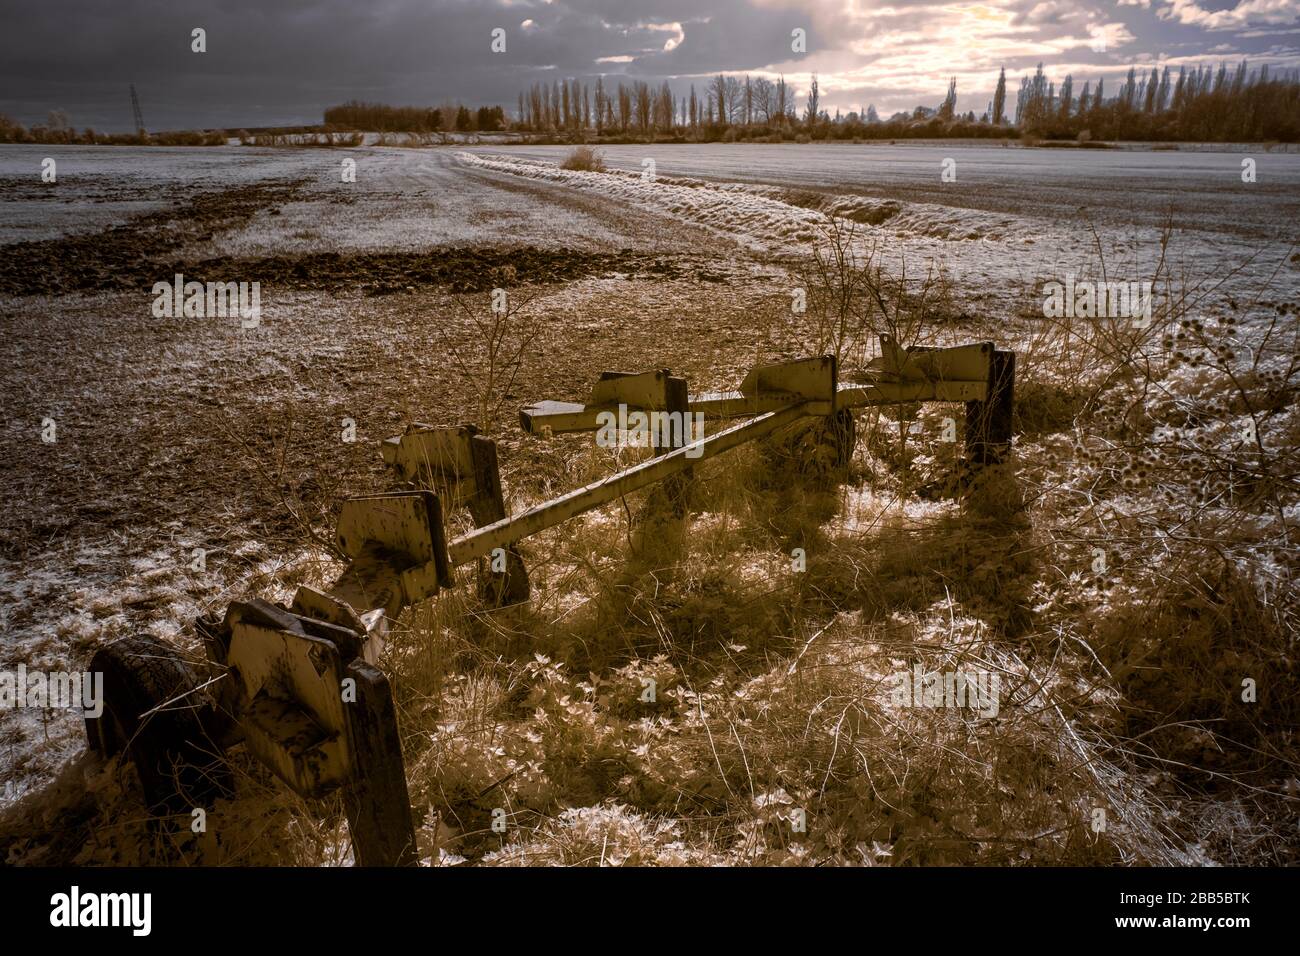 Maquinaria agrícola abandonada, imagen tomada en infrarrojo cercano (720nm), Warwickshire, Reino Unido Foto de stock